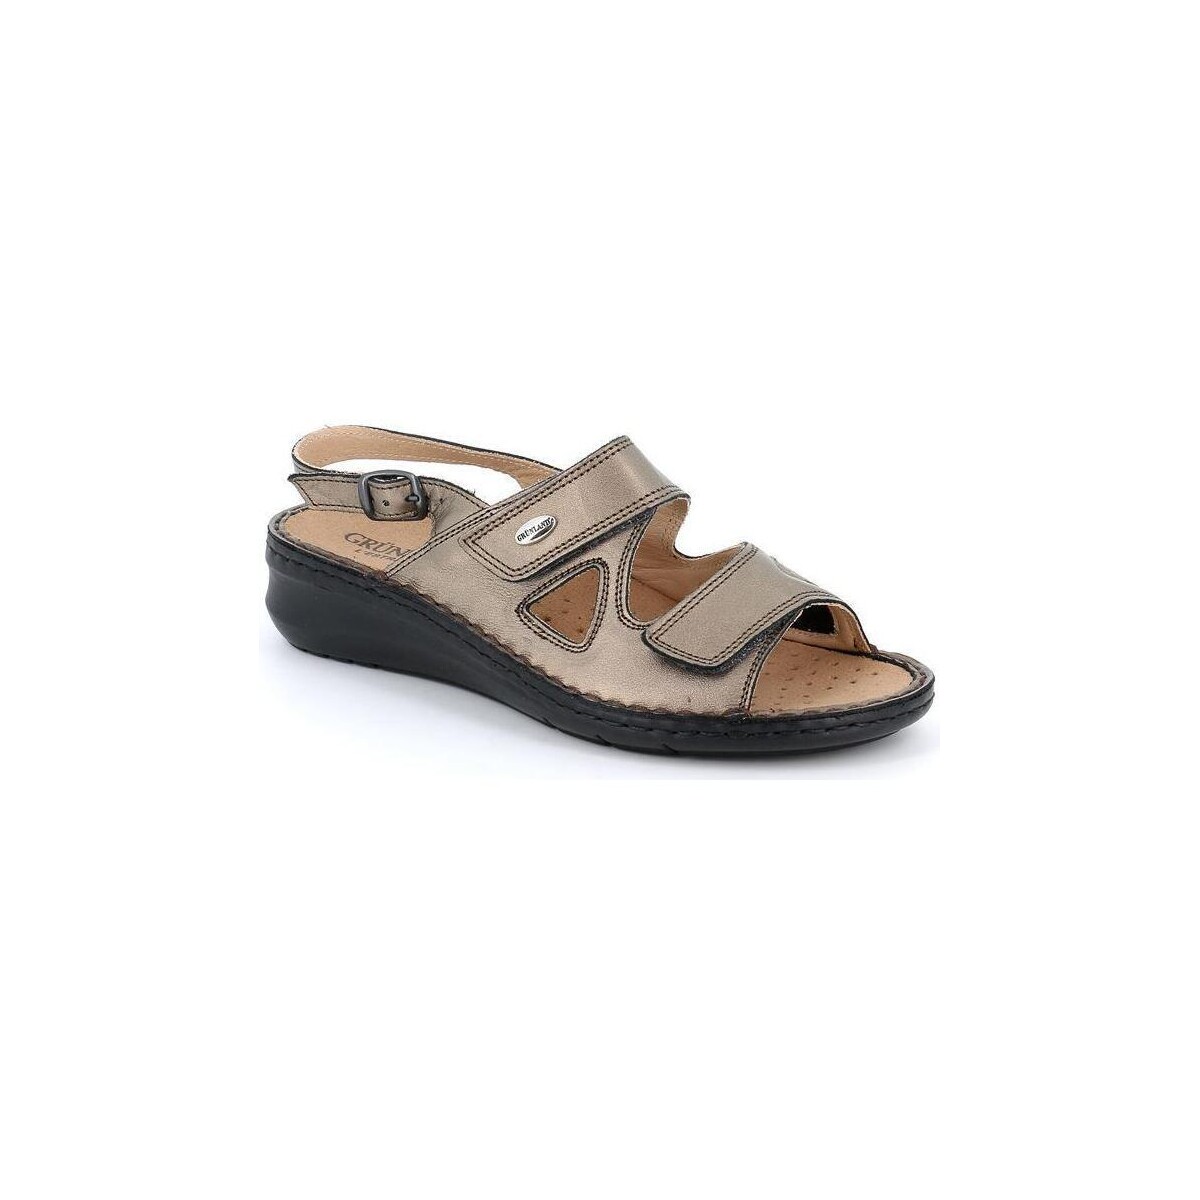 Chaussures Femme Sandales et Nu-pieds Grunland DSG-SE0207 Gris